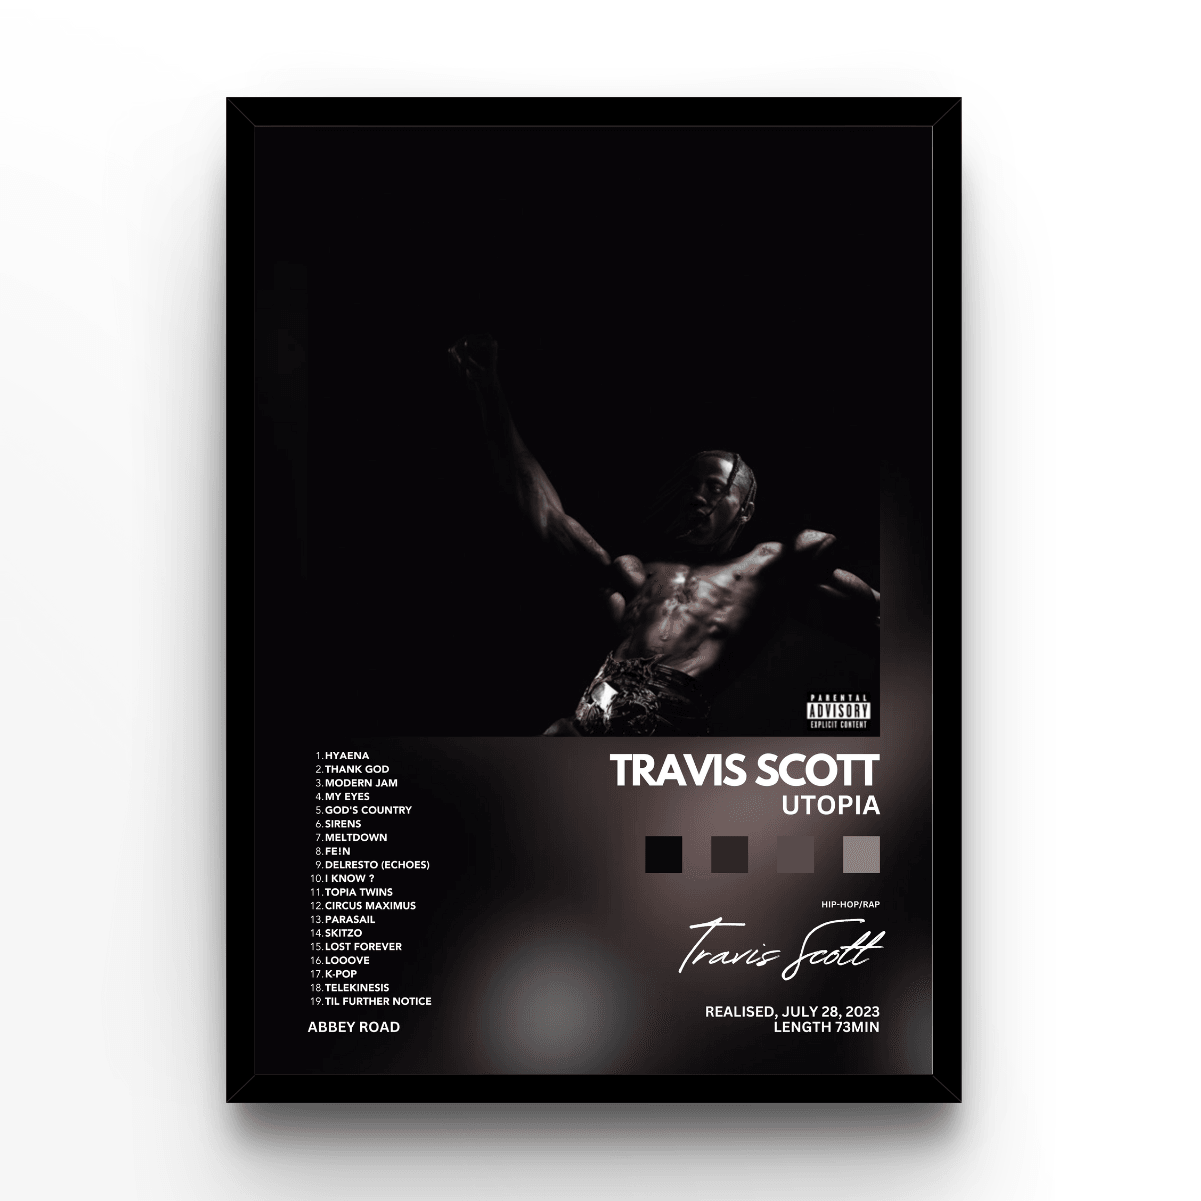 Travis Scott Utopia - A4, A3, A2 Posters Base - Poster Print Shop / Art Prints / PostersBase